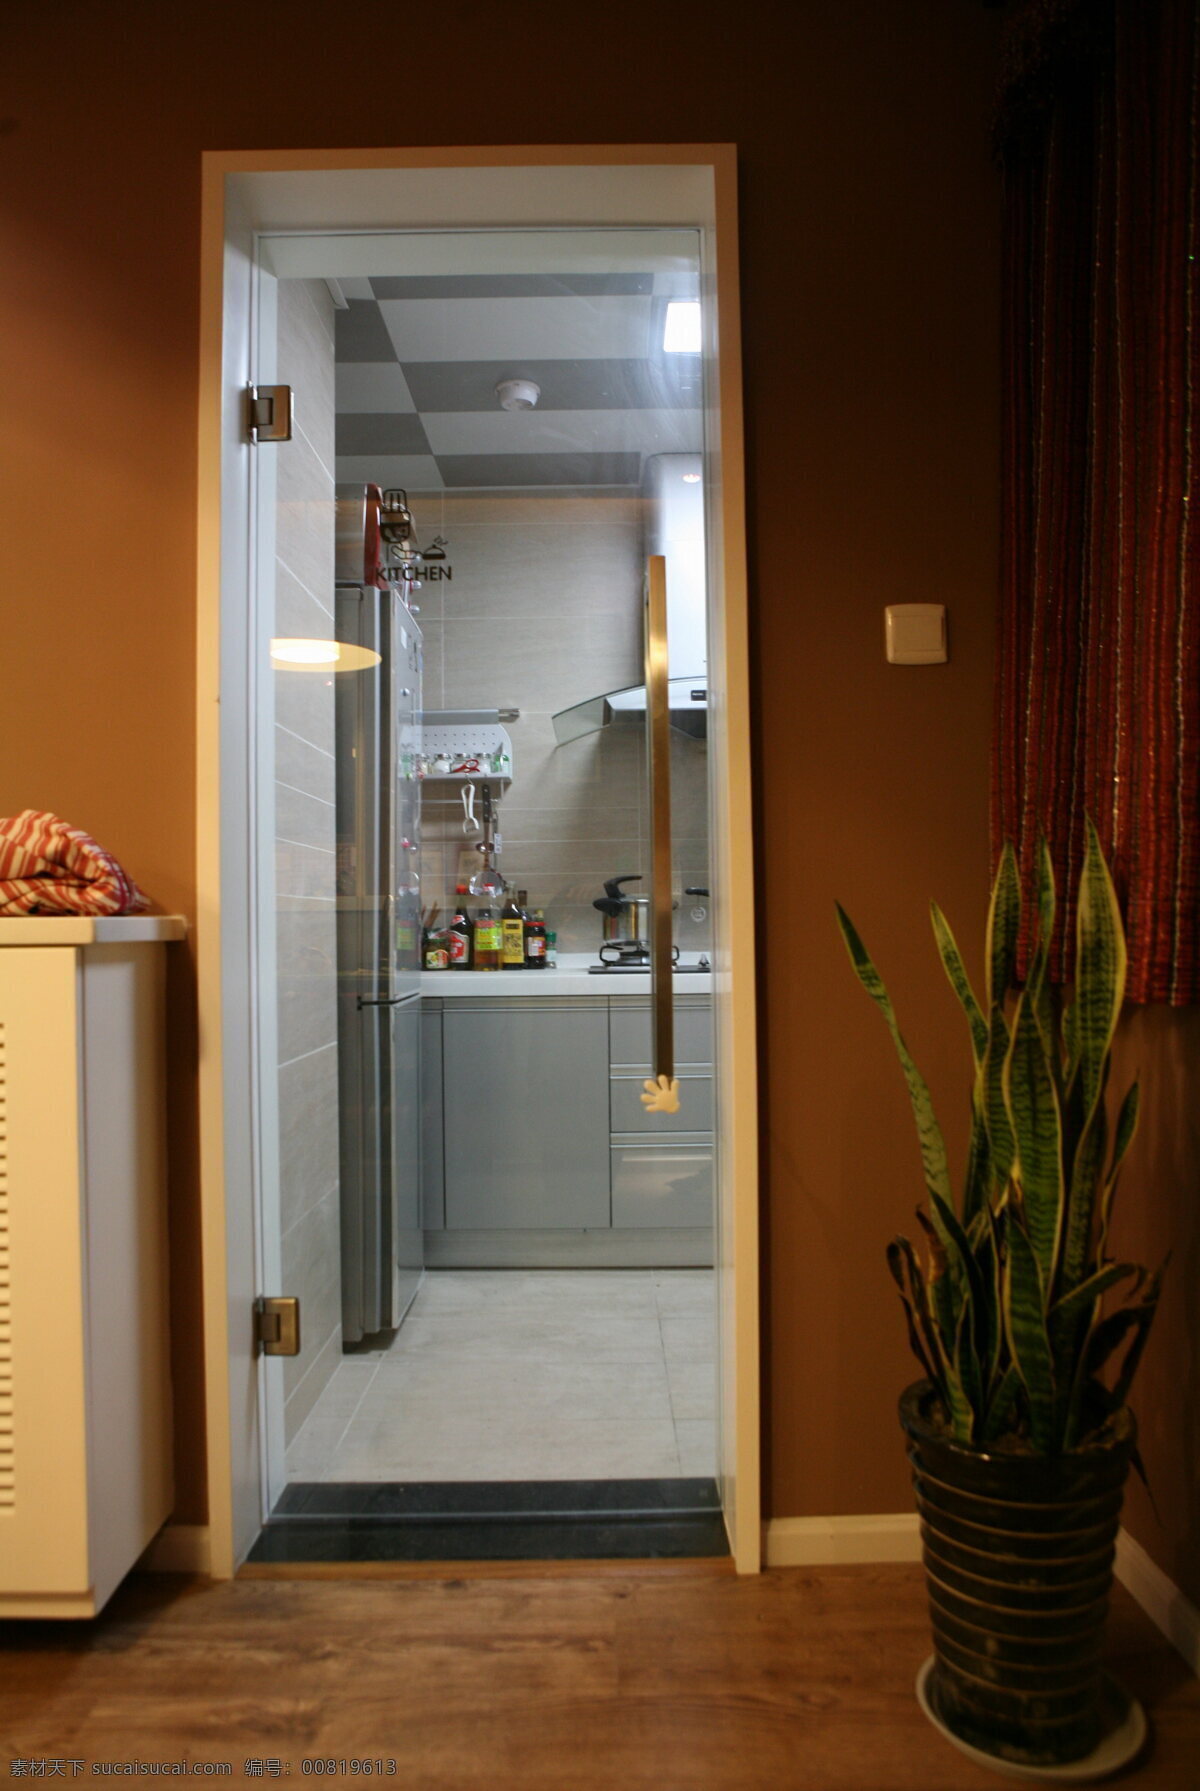 简约 风 室内设计 厨房门 效果图 现代 厨房 料理台 白色调 家装 门口